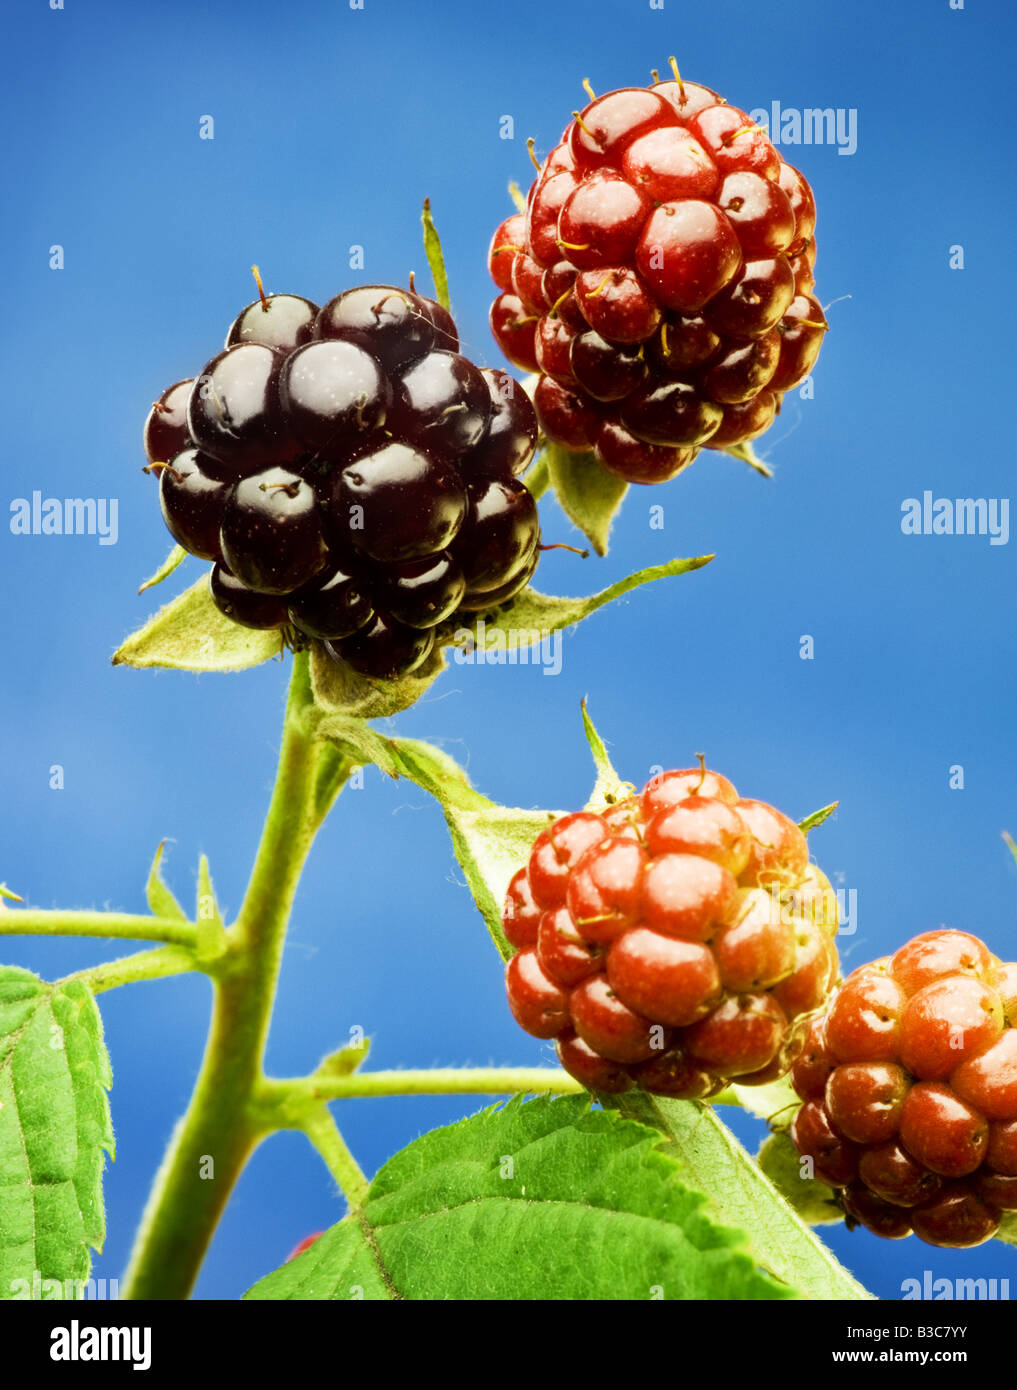 Blackberry Stock Photo